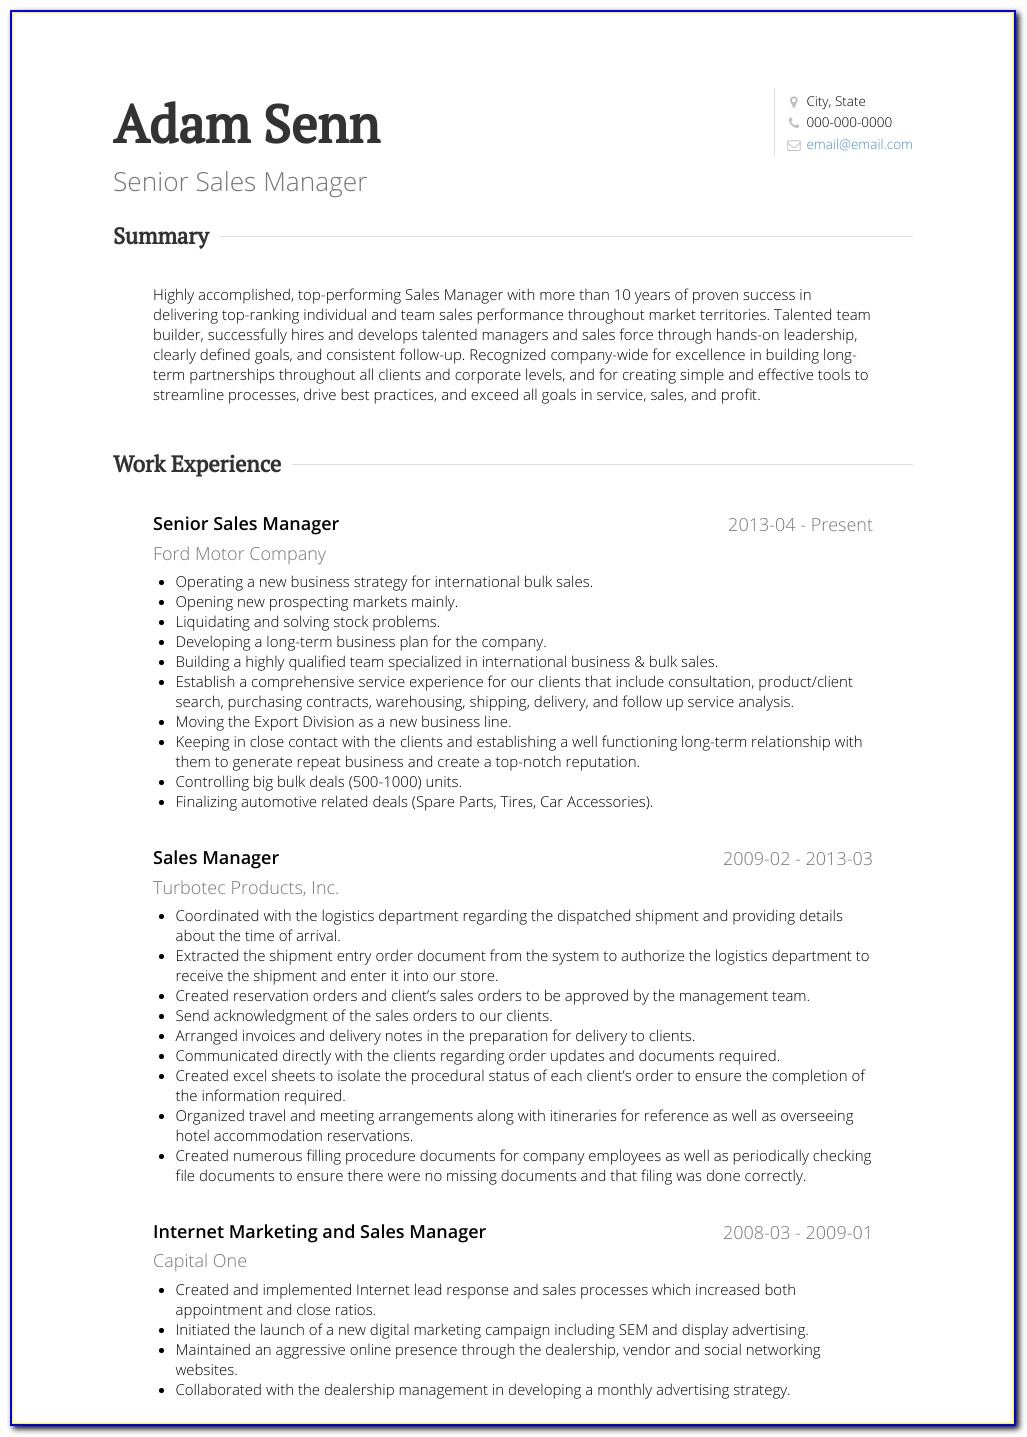 Resume Sales Manager Job Duties